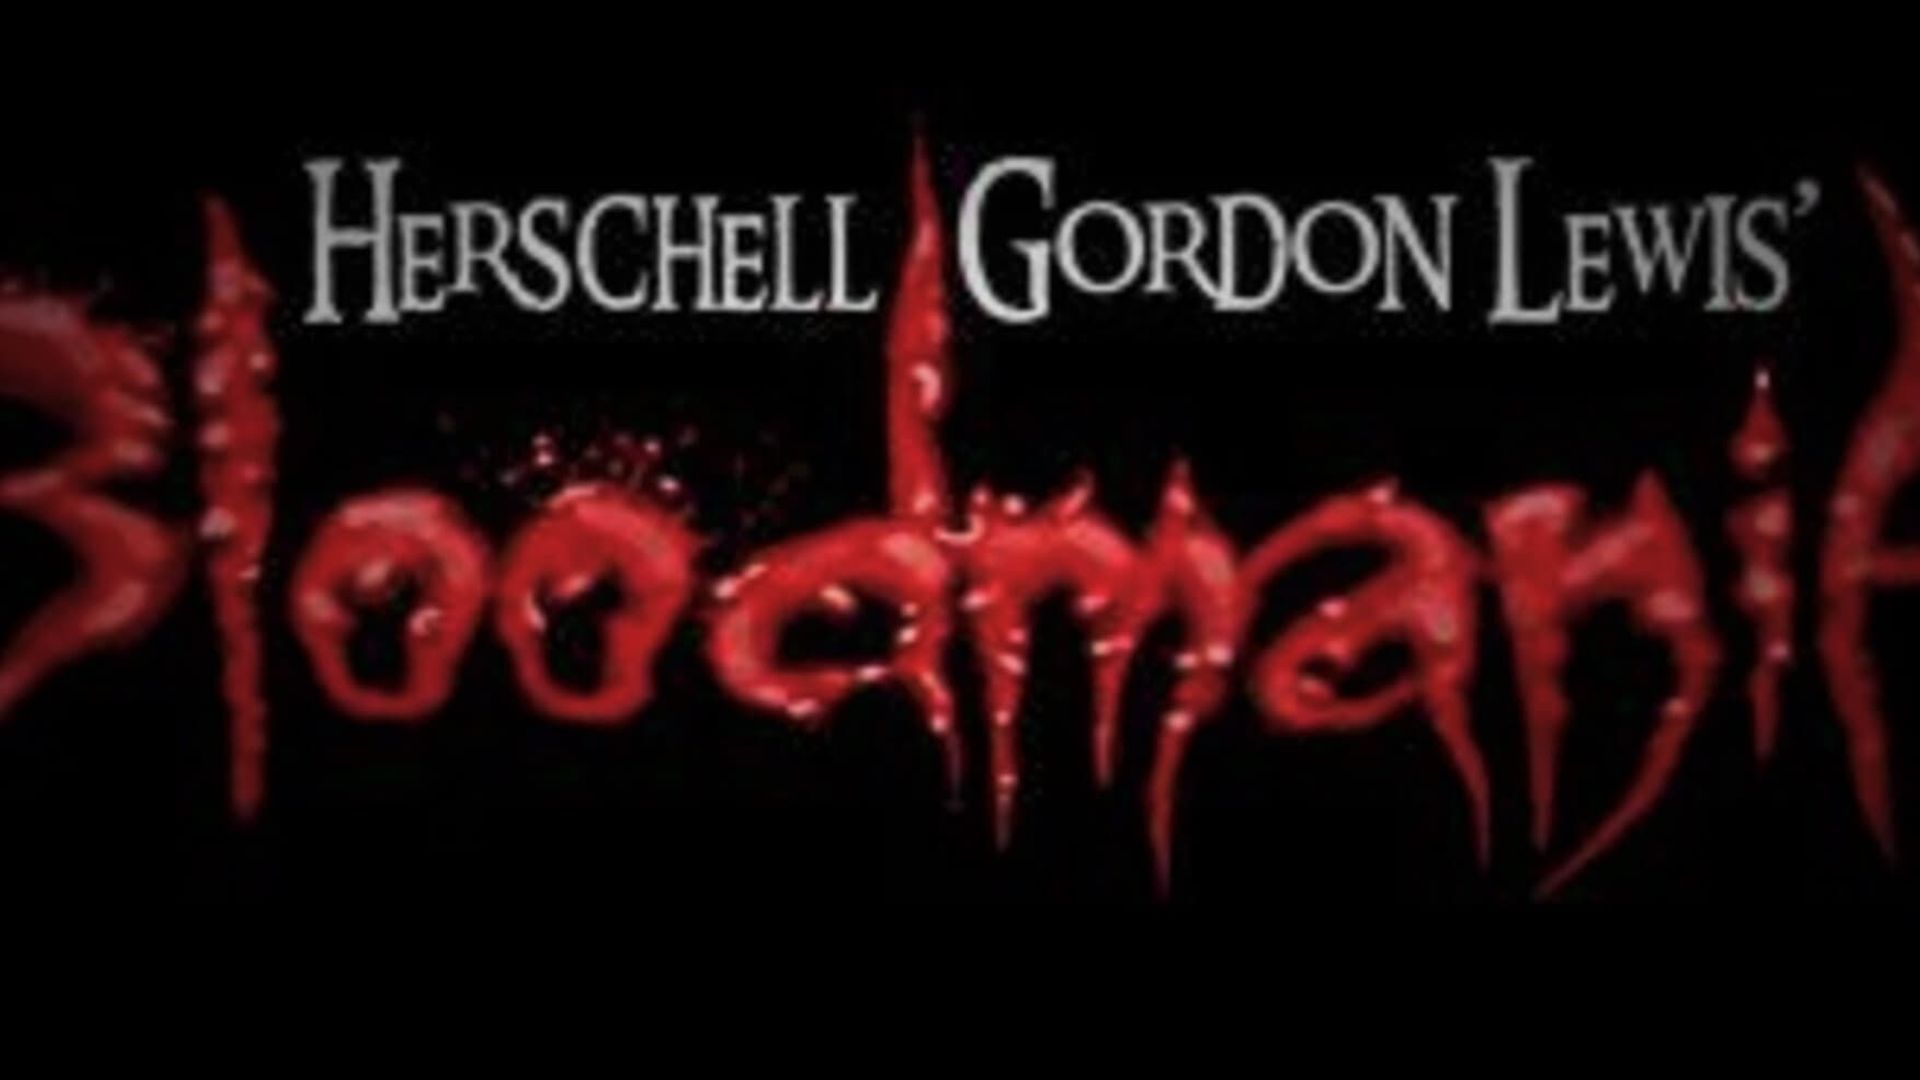 Herschell Gordon Lewis' BloodMania background